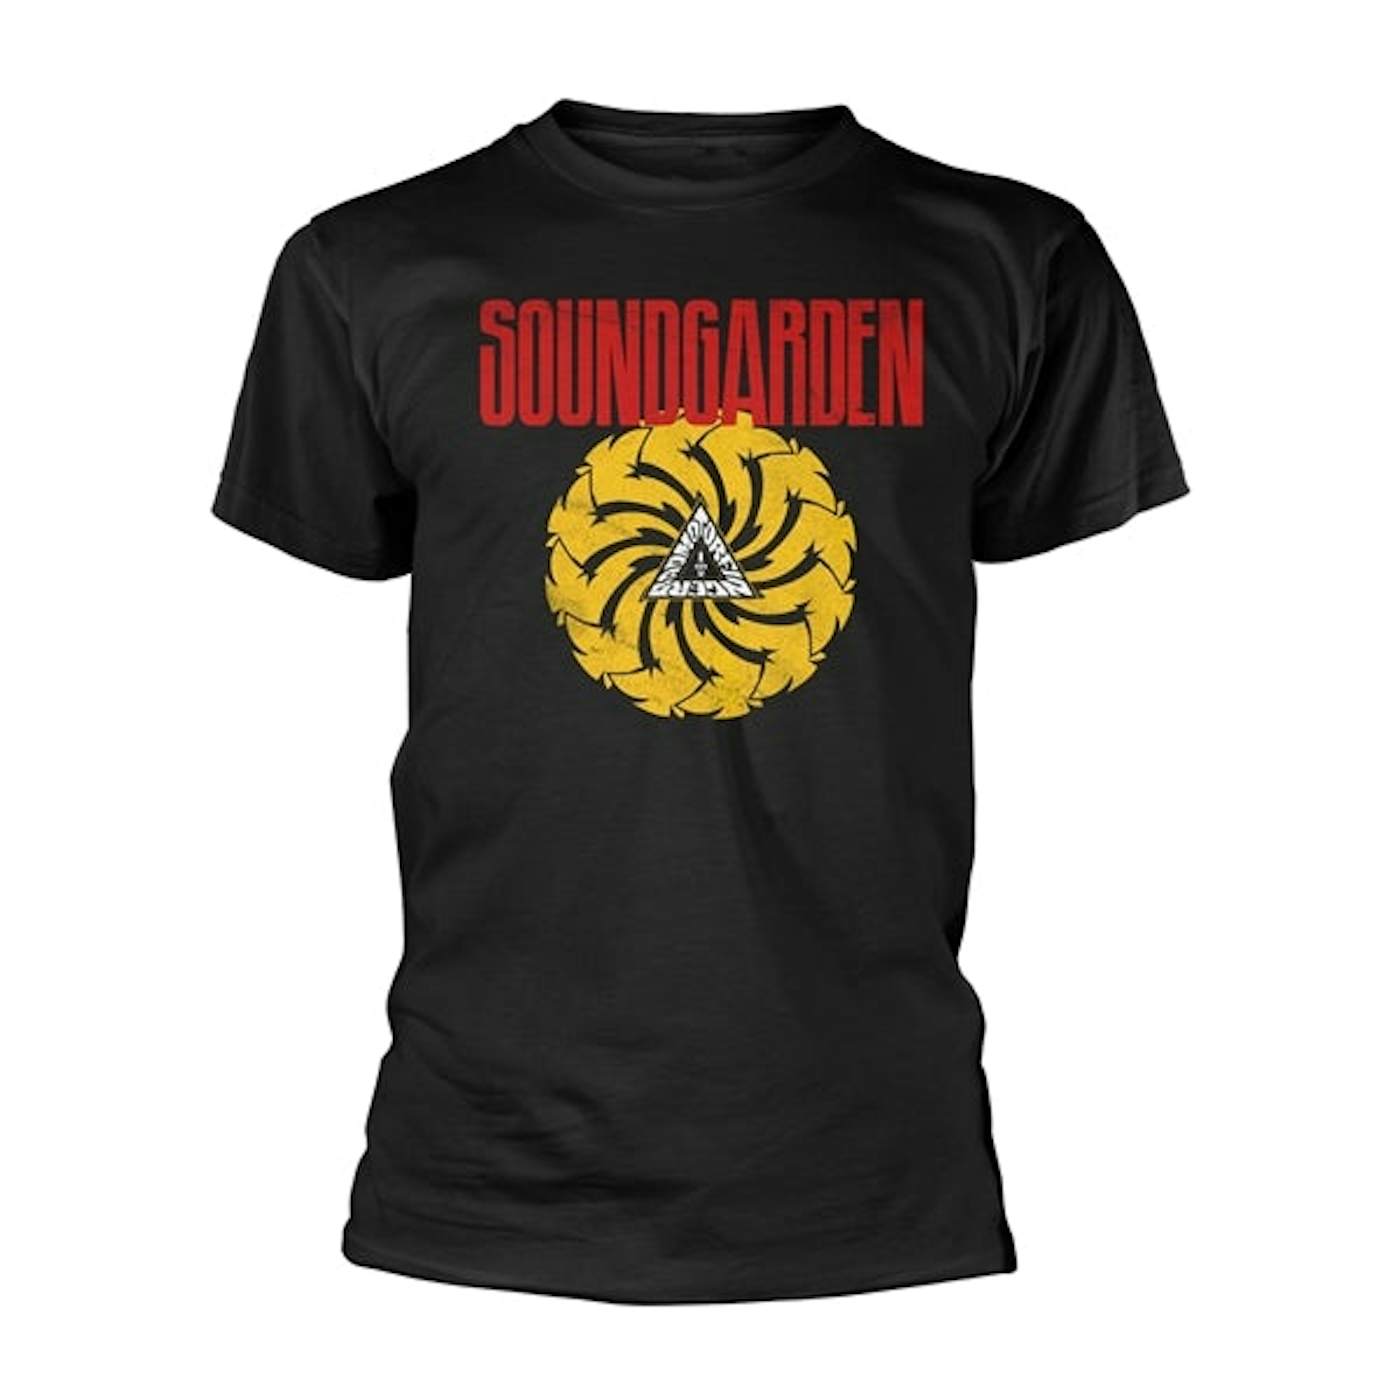 Soundgarden T Shirt - Badmotorfinger